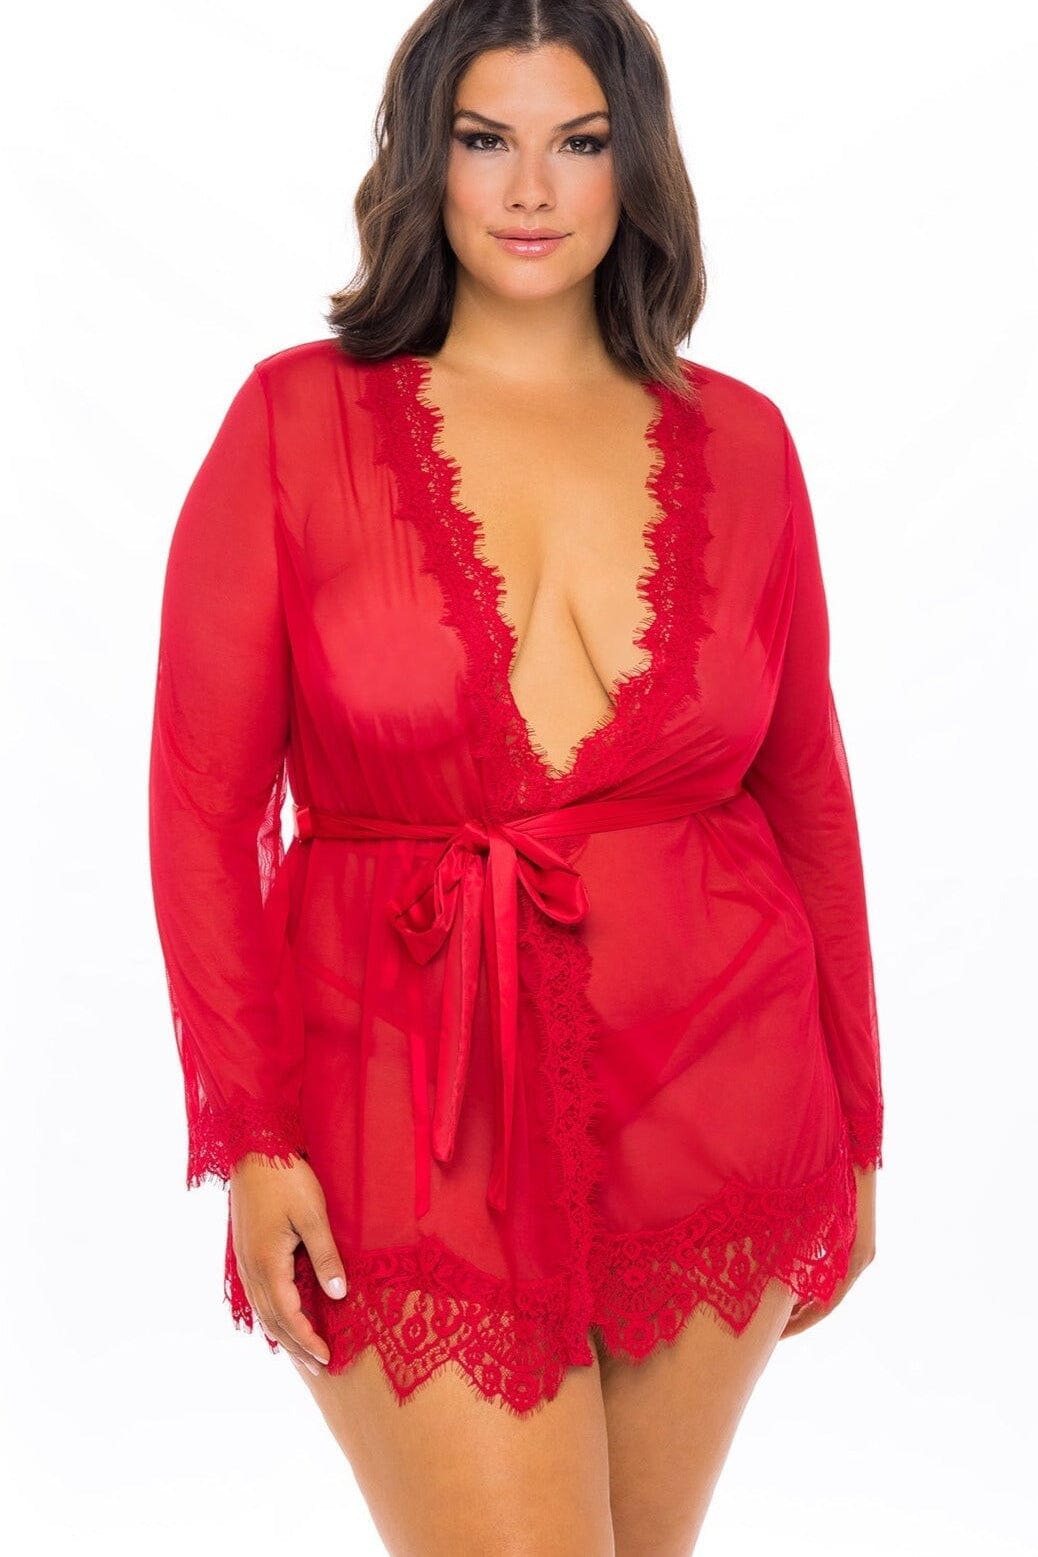 Lace Robe Set-Gowns + Robes-Oh La La Cheri-Red-1X/2XL-SEXYSHOES.COM